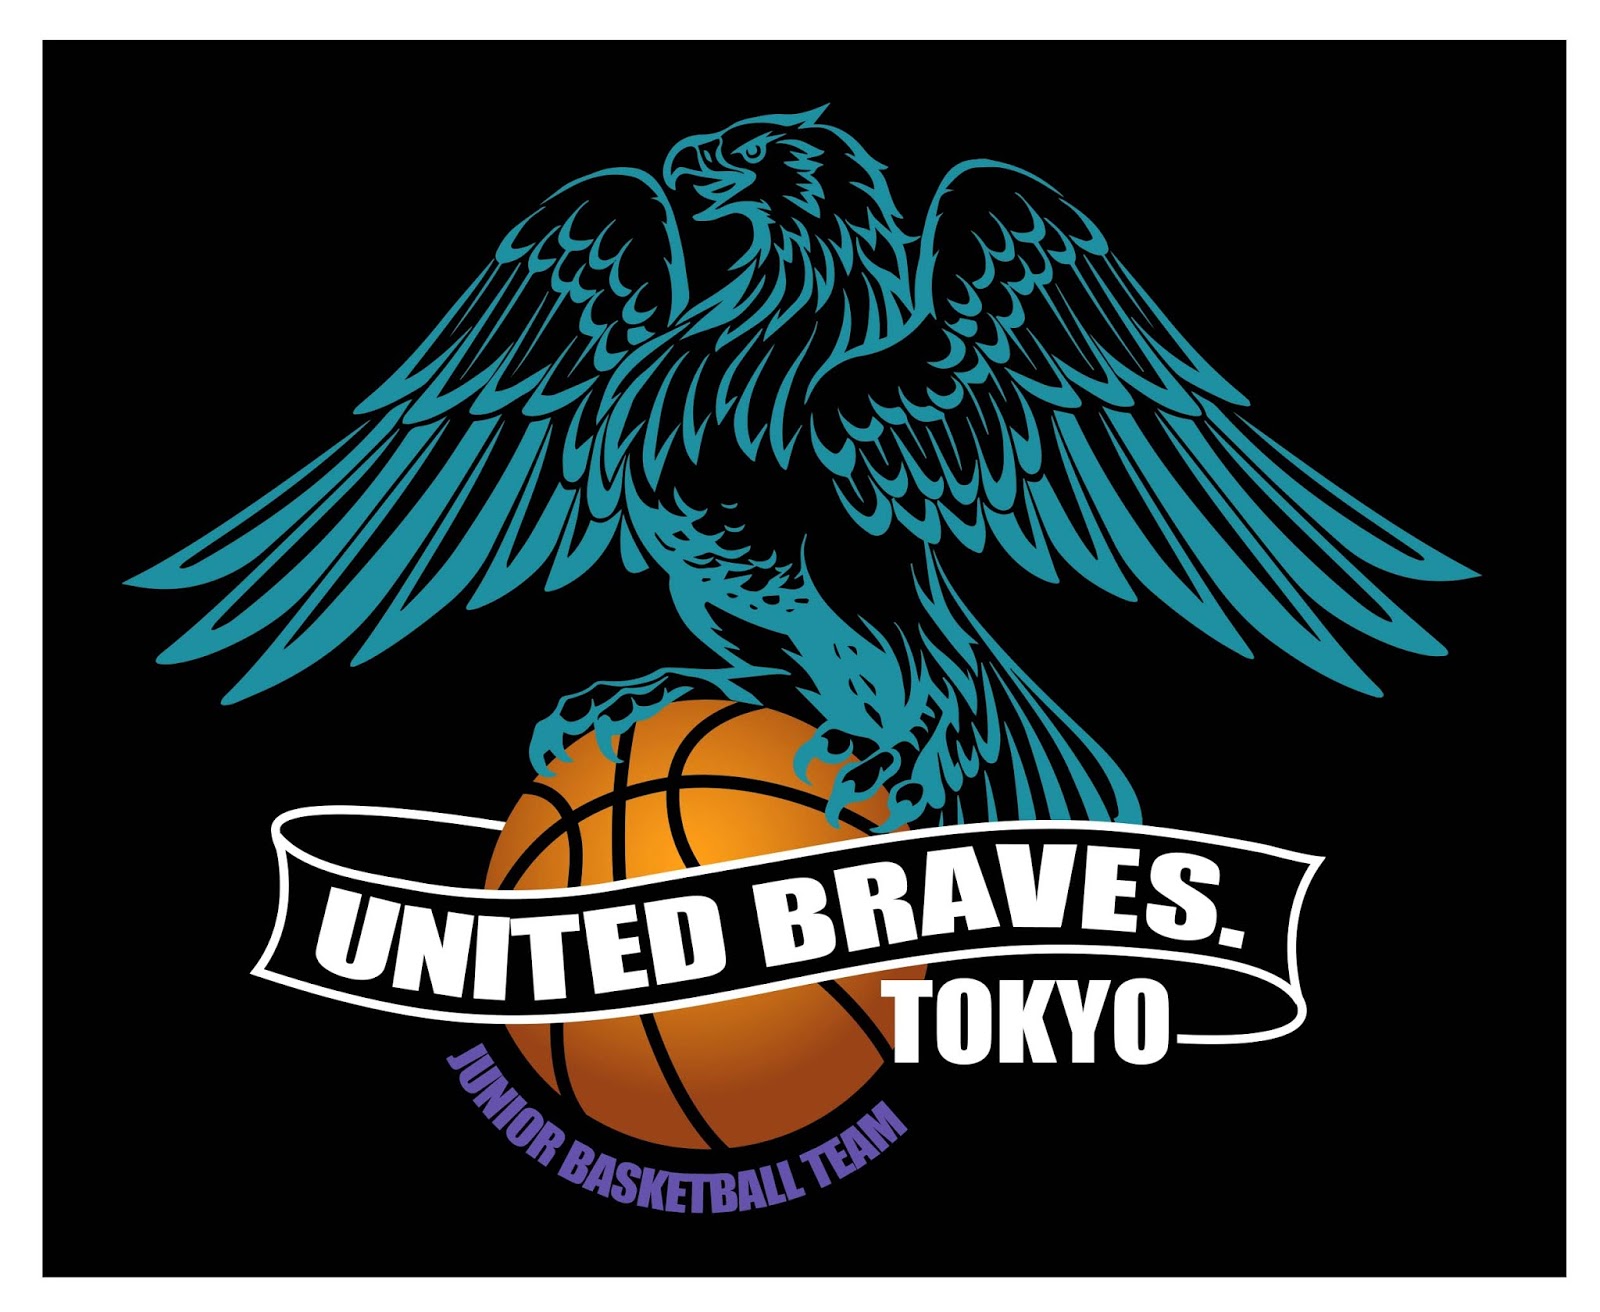 Tokyo United Braves 東京ユナイテッドブレーブス 東京都 杉並区 ミニバスケットチーム 浜田山小学校 高井戸東小学校 他 チームロゴが完成 Tokyo United Braves 東京ユナイテッドブレーブス チームロゴ決定